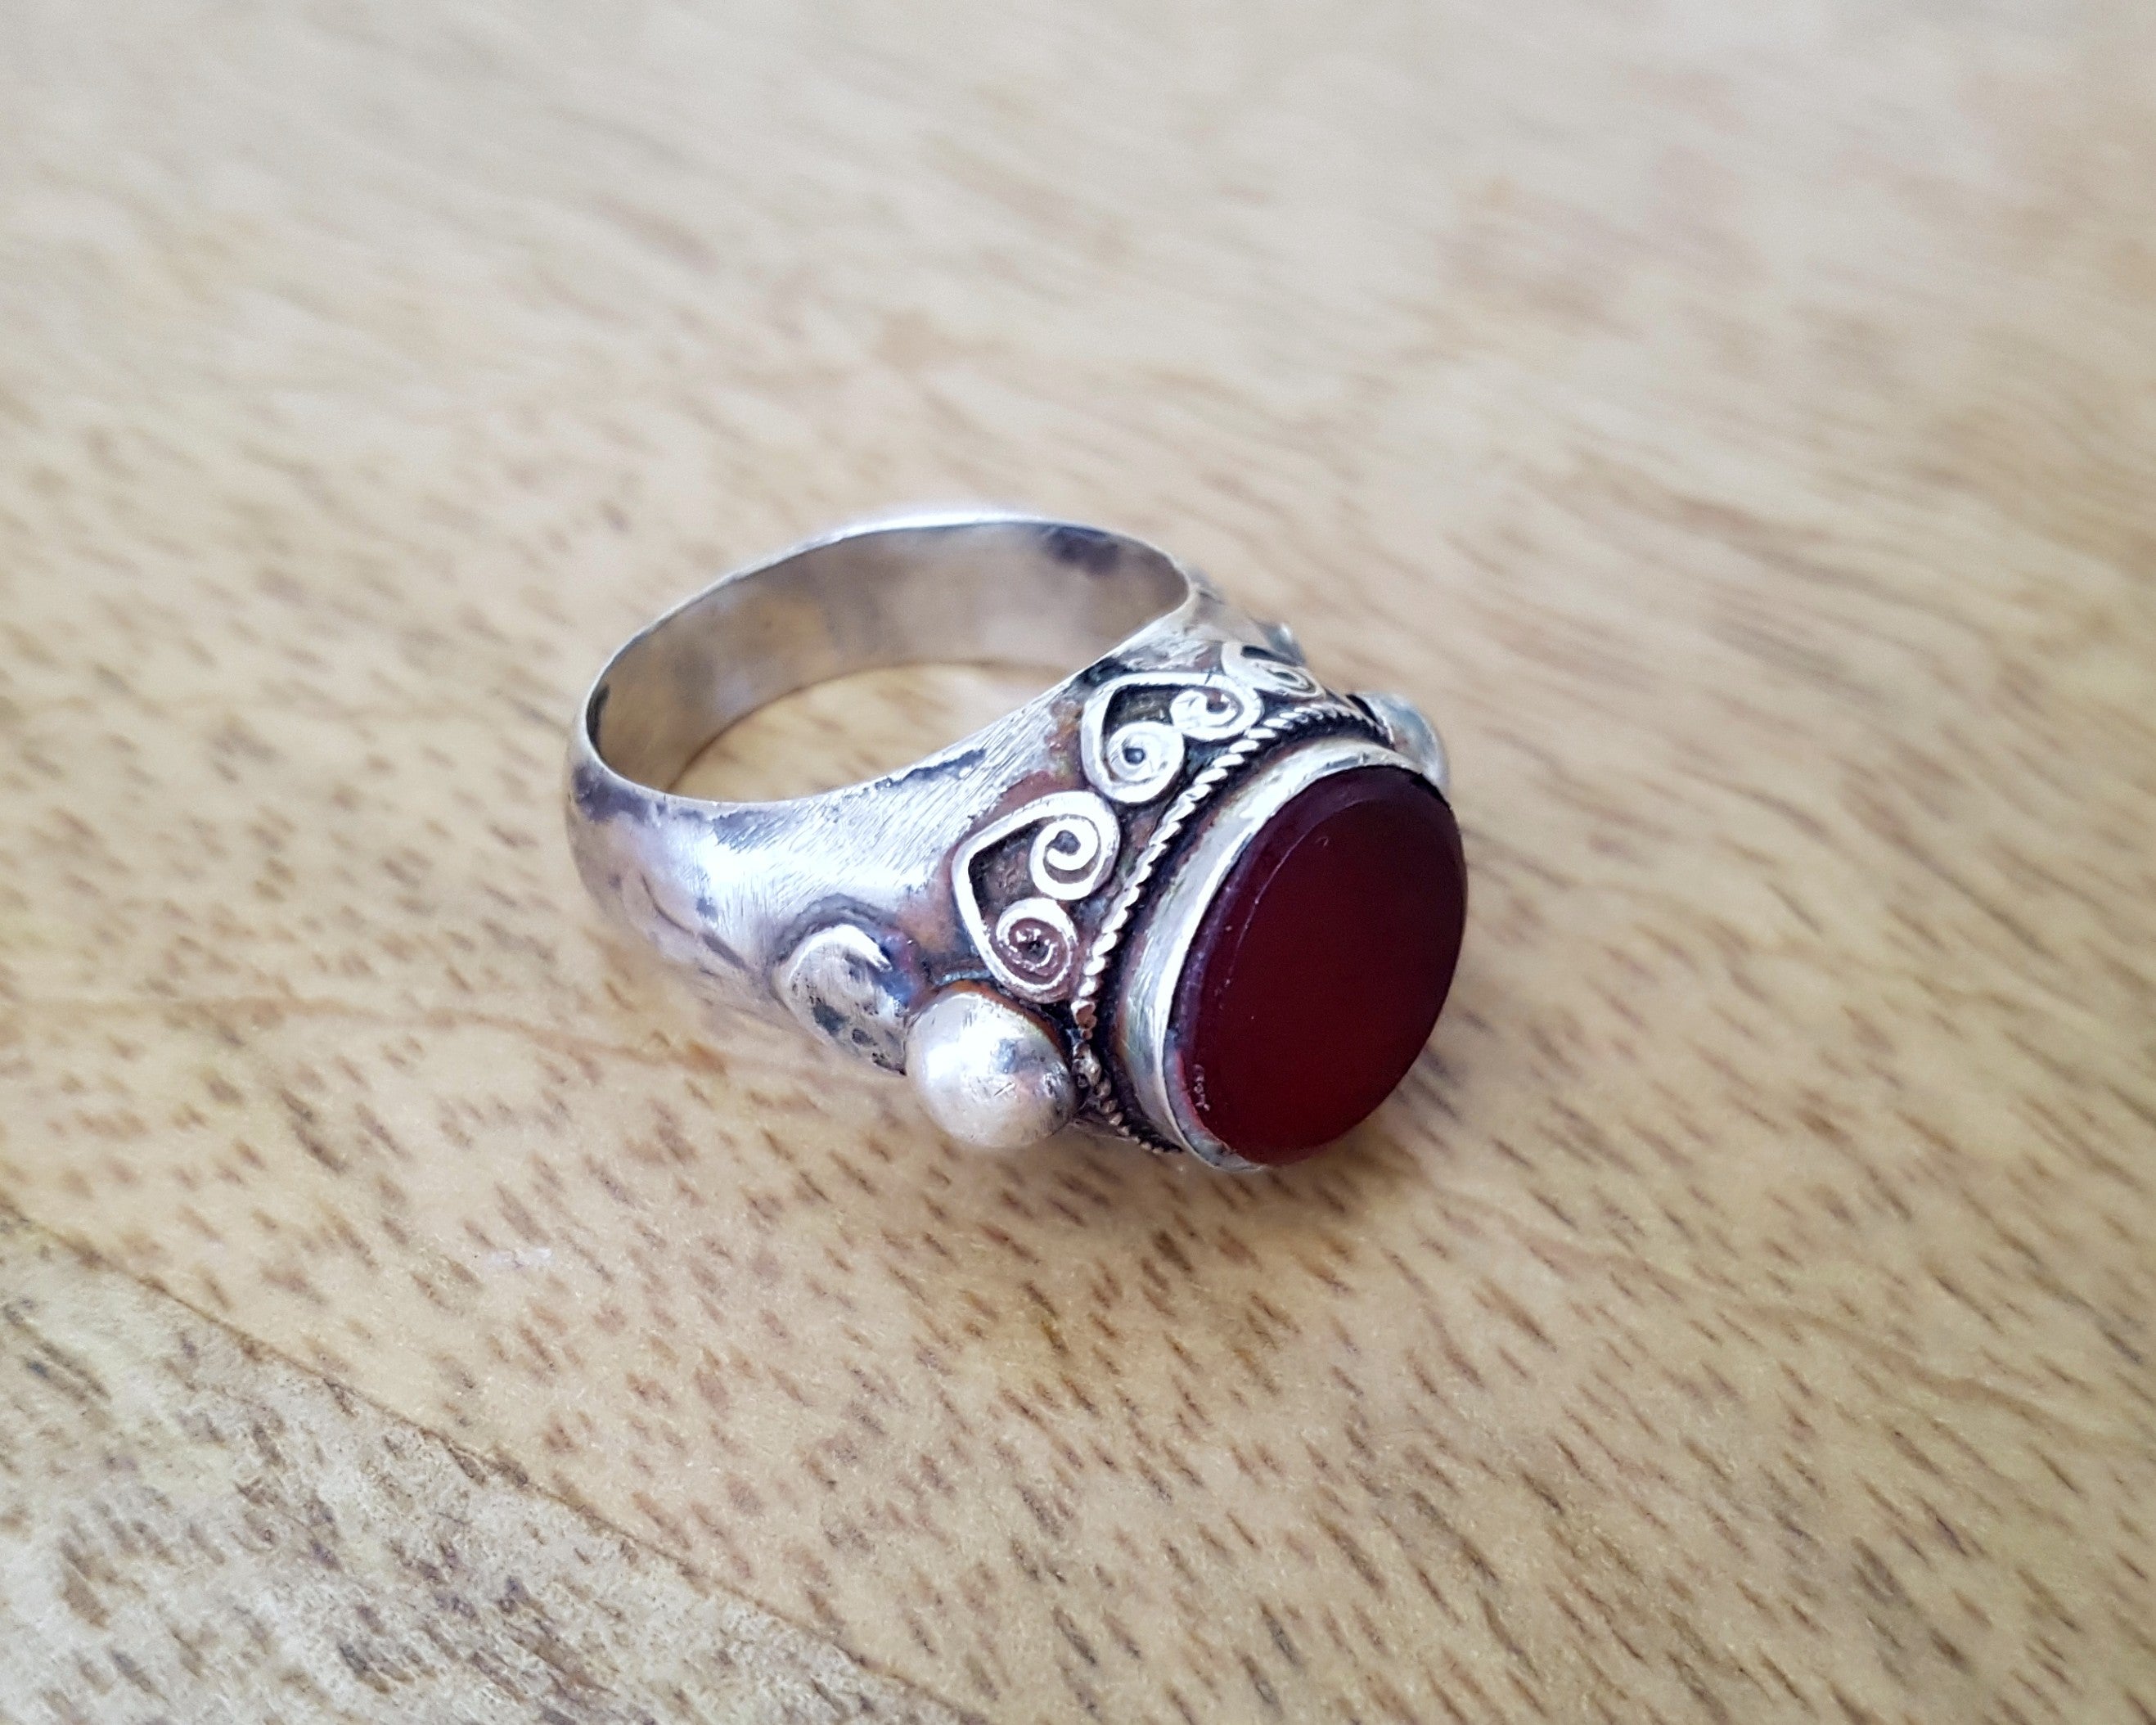 Turkmen Carnelian Ring - Size 9.5